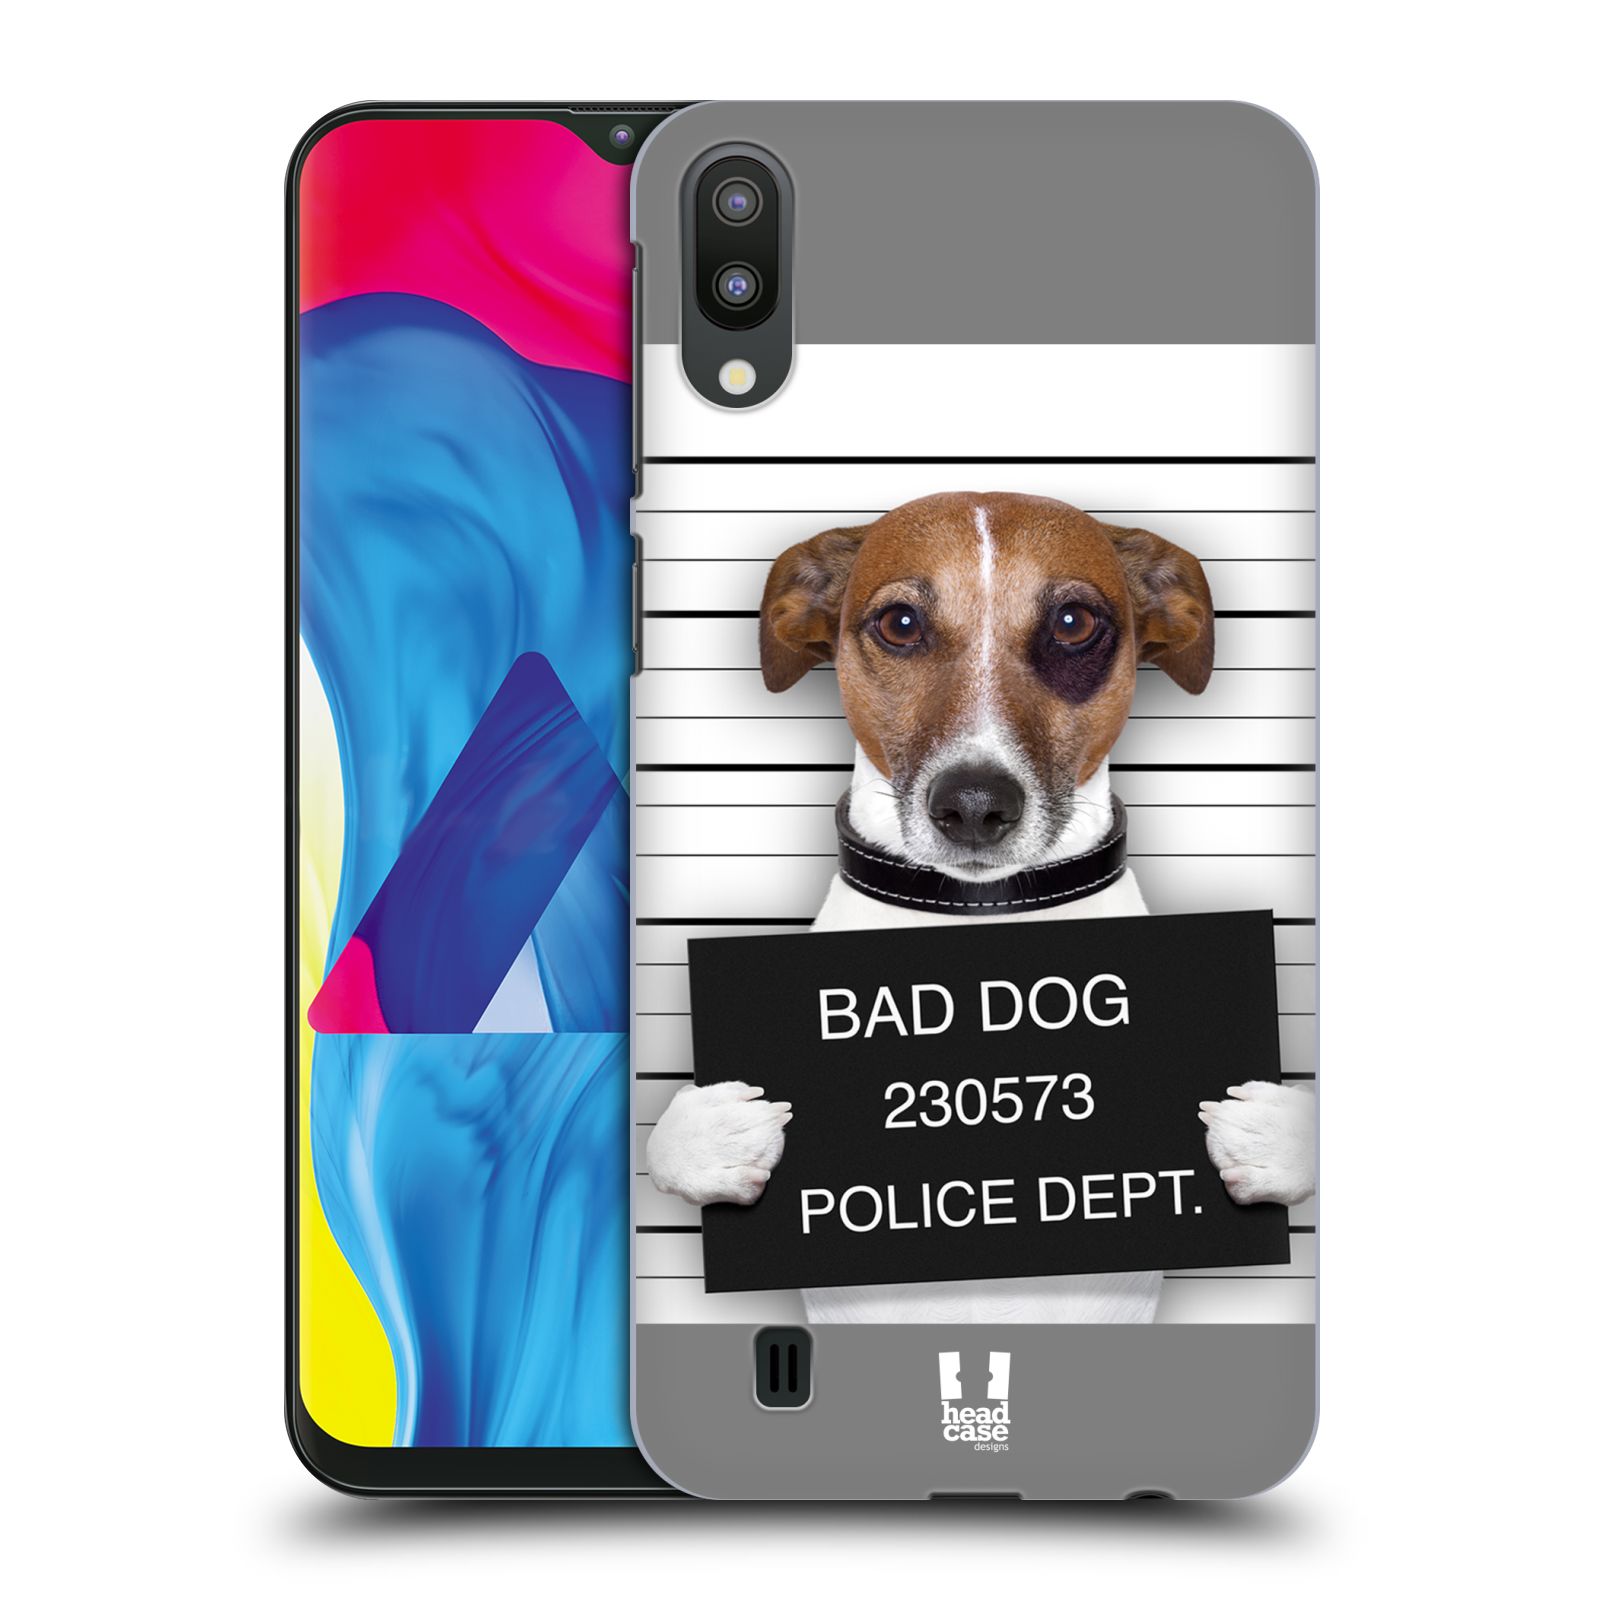 Plastový obal HEAD CASE na mobil Samsung Galaxy M10 vzor Legrační zvířátka pejsek na policii